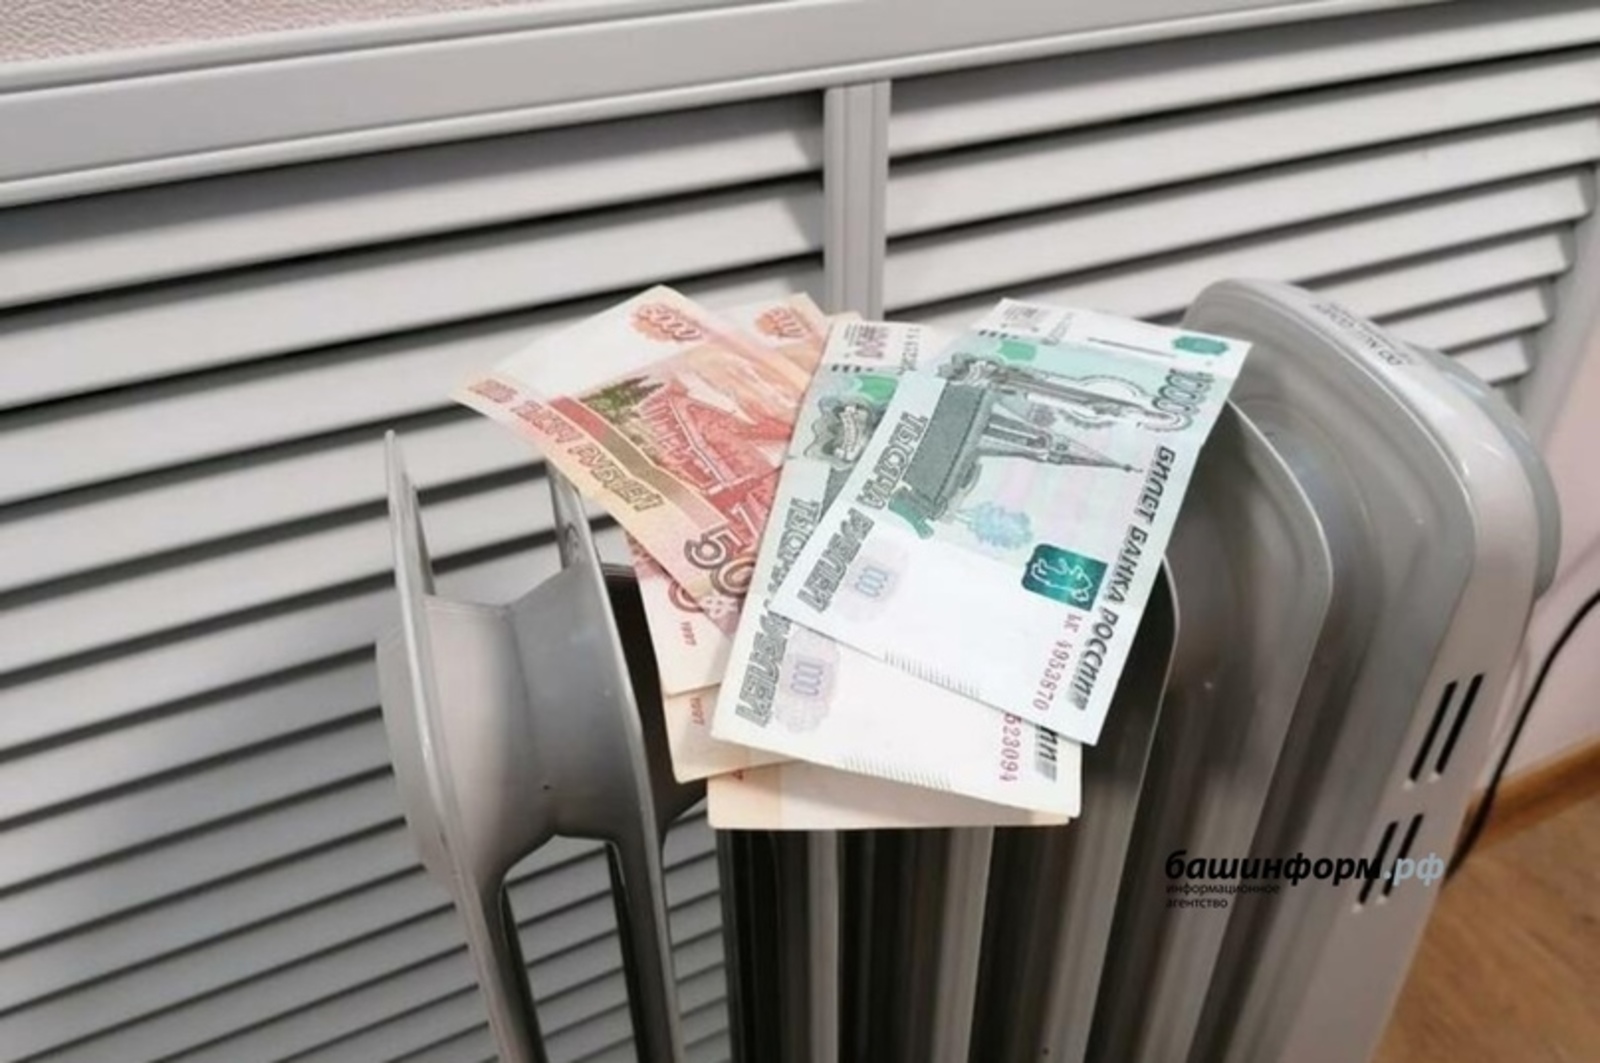 В правительстве Башкирии разъяснили, почему пришли счета за отопление в сентябре